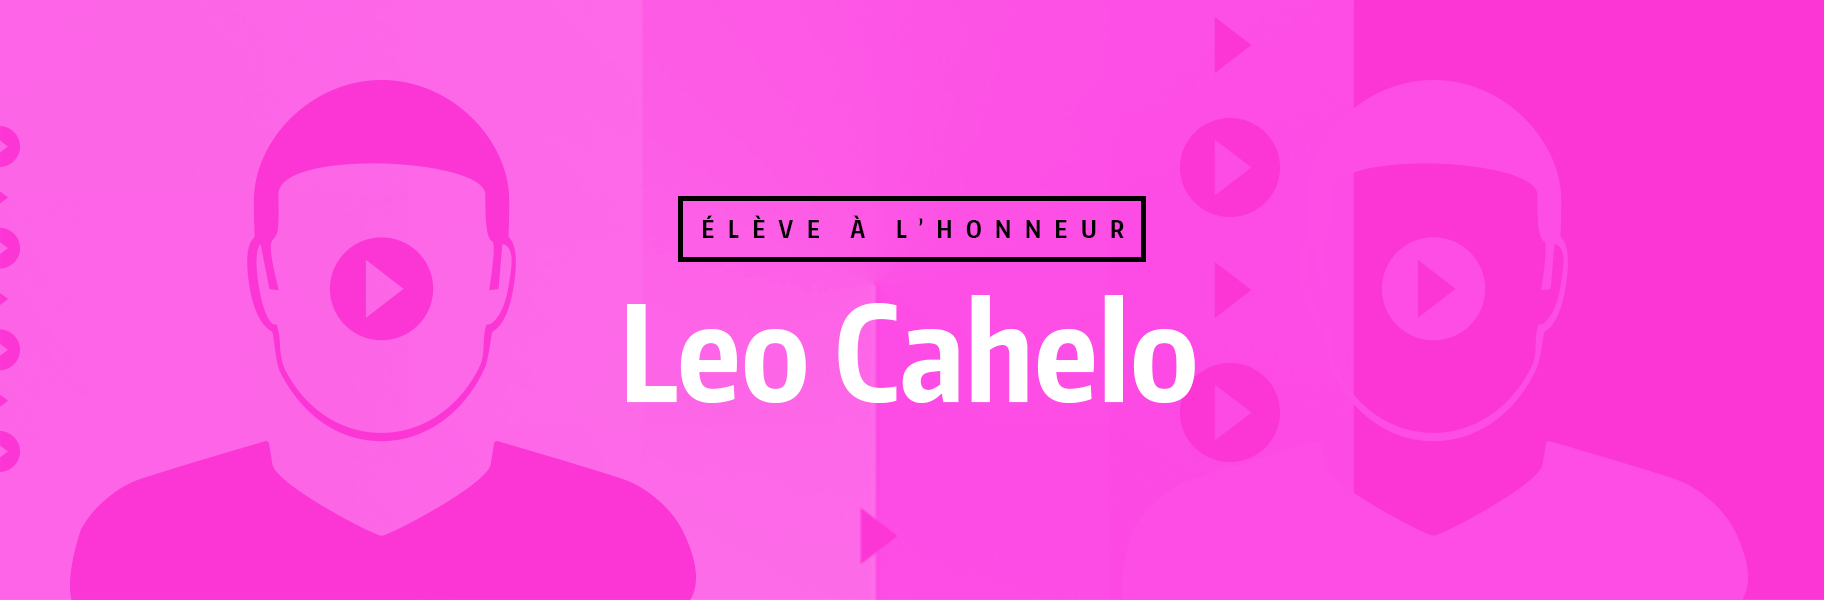 Élève à l'honneur - Leo Cahelo